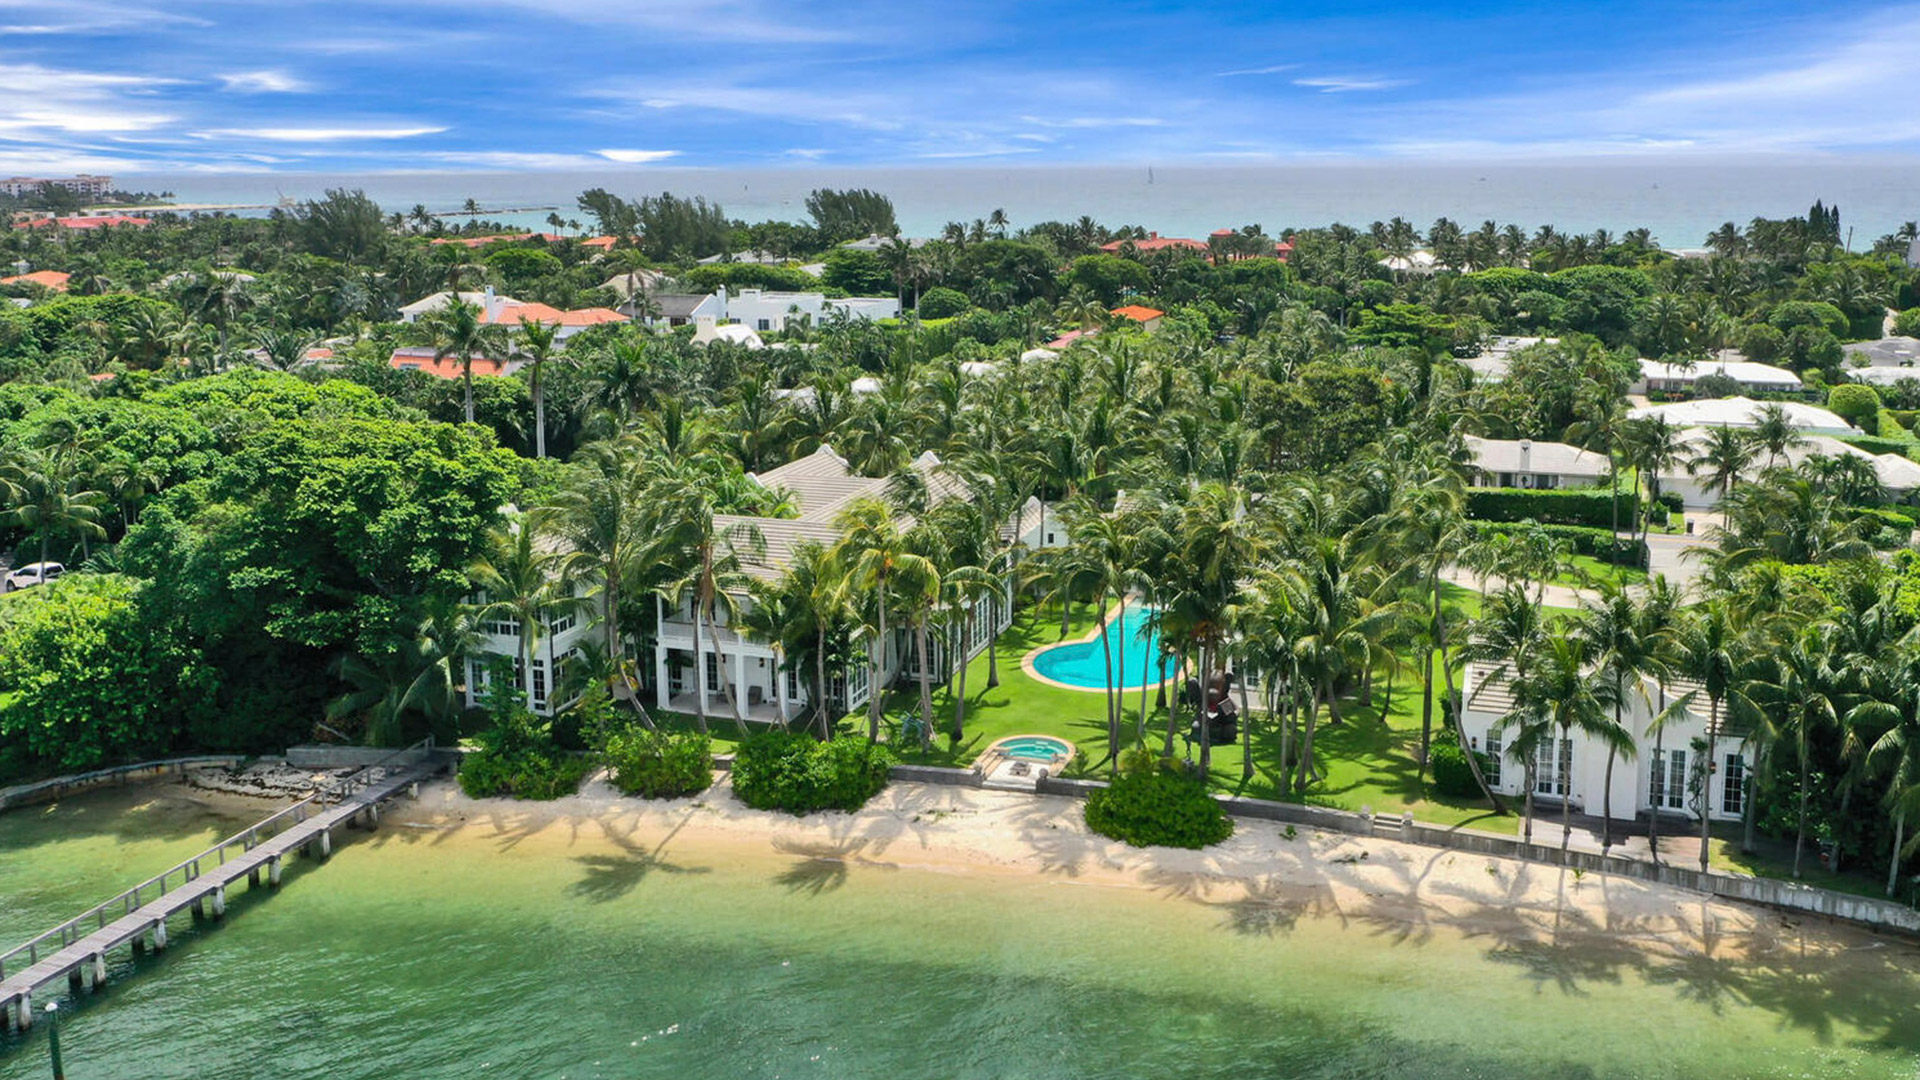 Sylvester Stallone desembolsó USD 35 millones por la propiedad, ubicada en la localidad de Palm Beach, en Florida. Tiene siete dormitorios, un muelle y una playa privada (The Grosby Group)